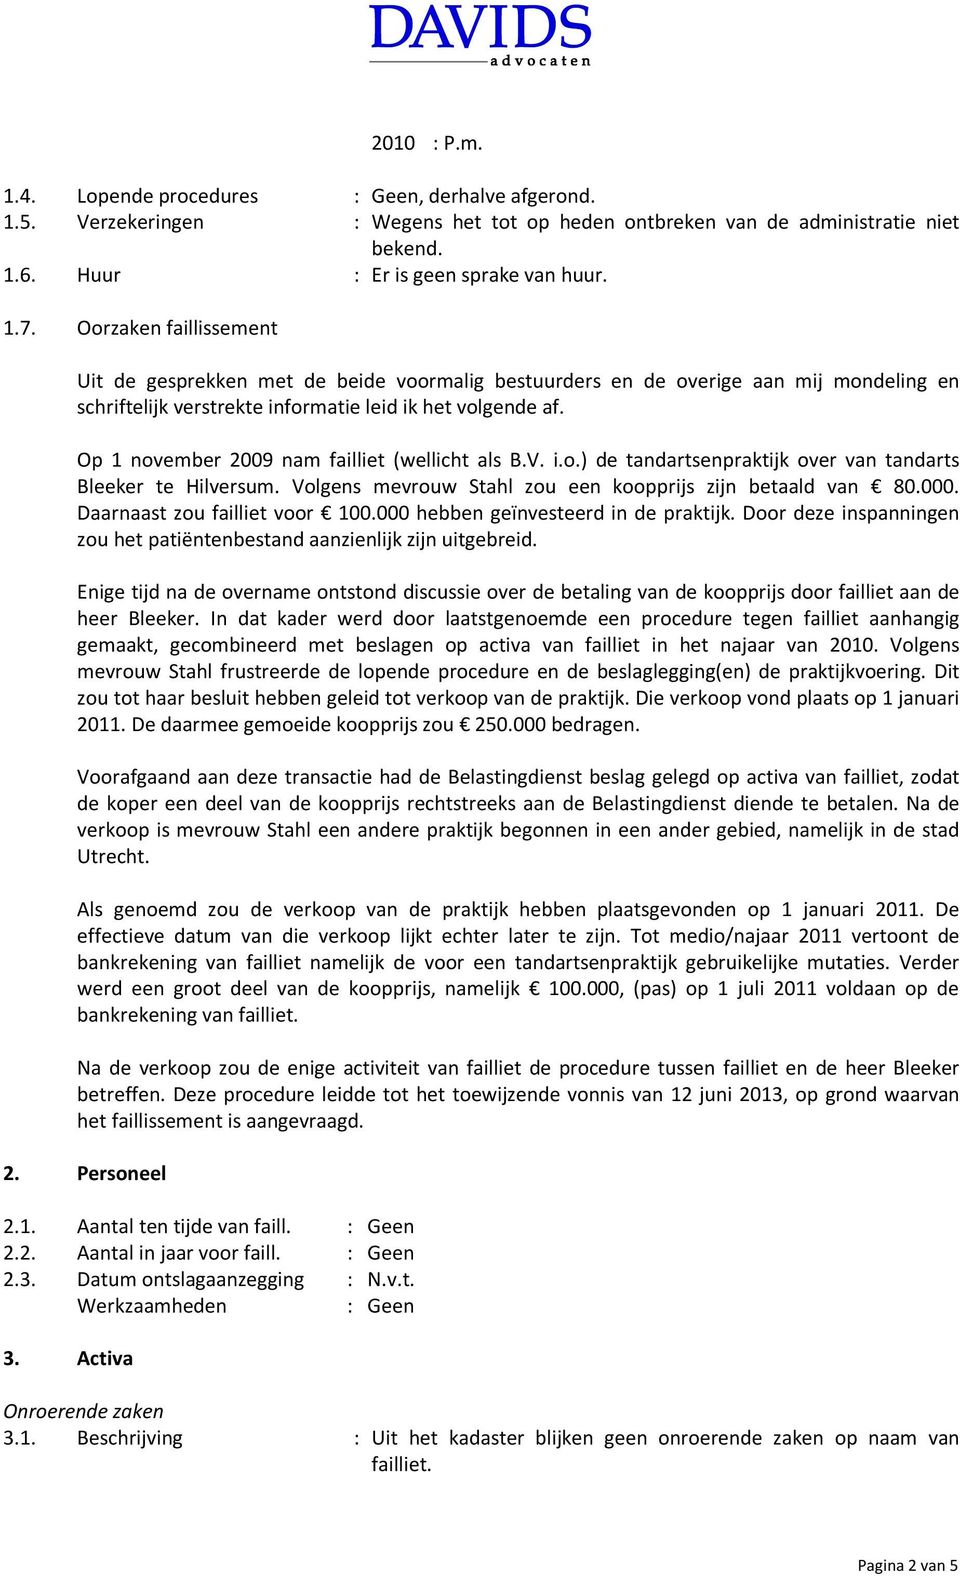 Op 1 november 2009 nam failliet (wellicht als B.V. i.o.) de tandartsenpraktijk over van tandarts Bleeker te Hilversum. Volgens mevrouw Stahl zou een koopprijs zijn betaald van 80.000.